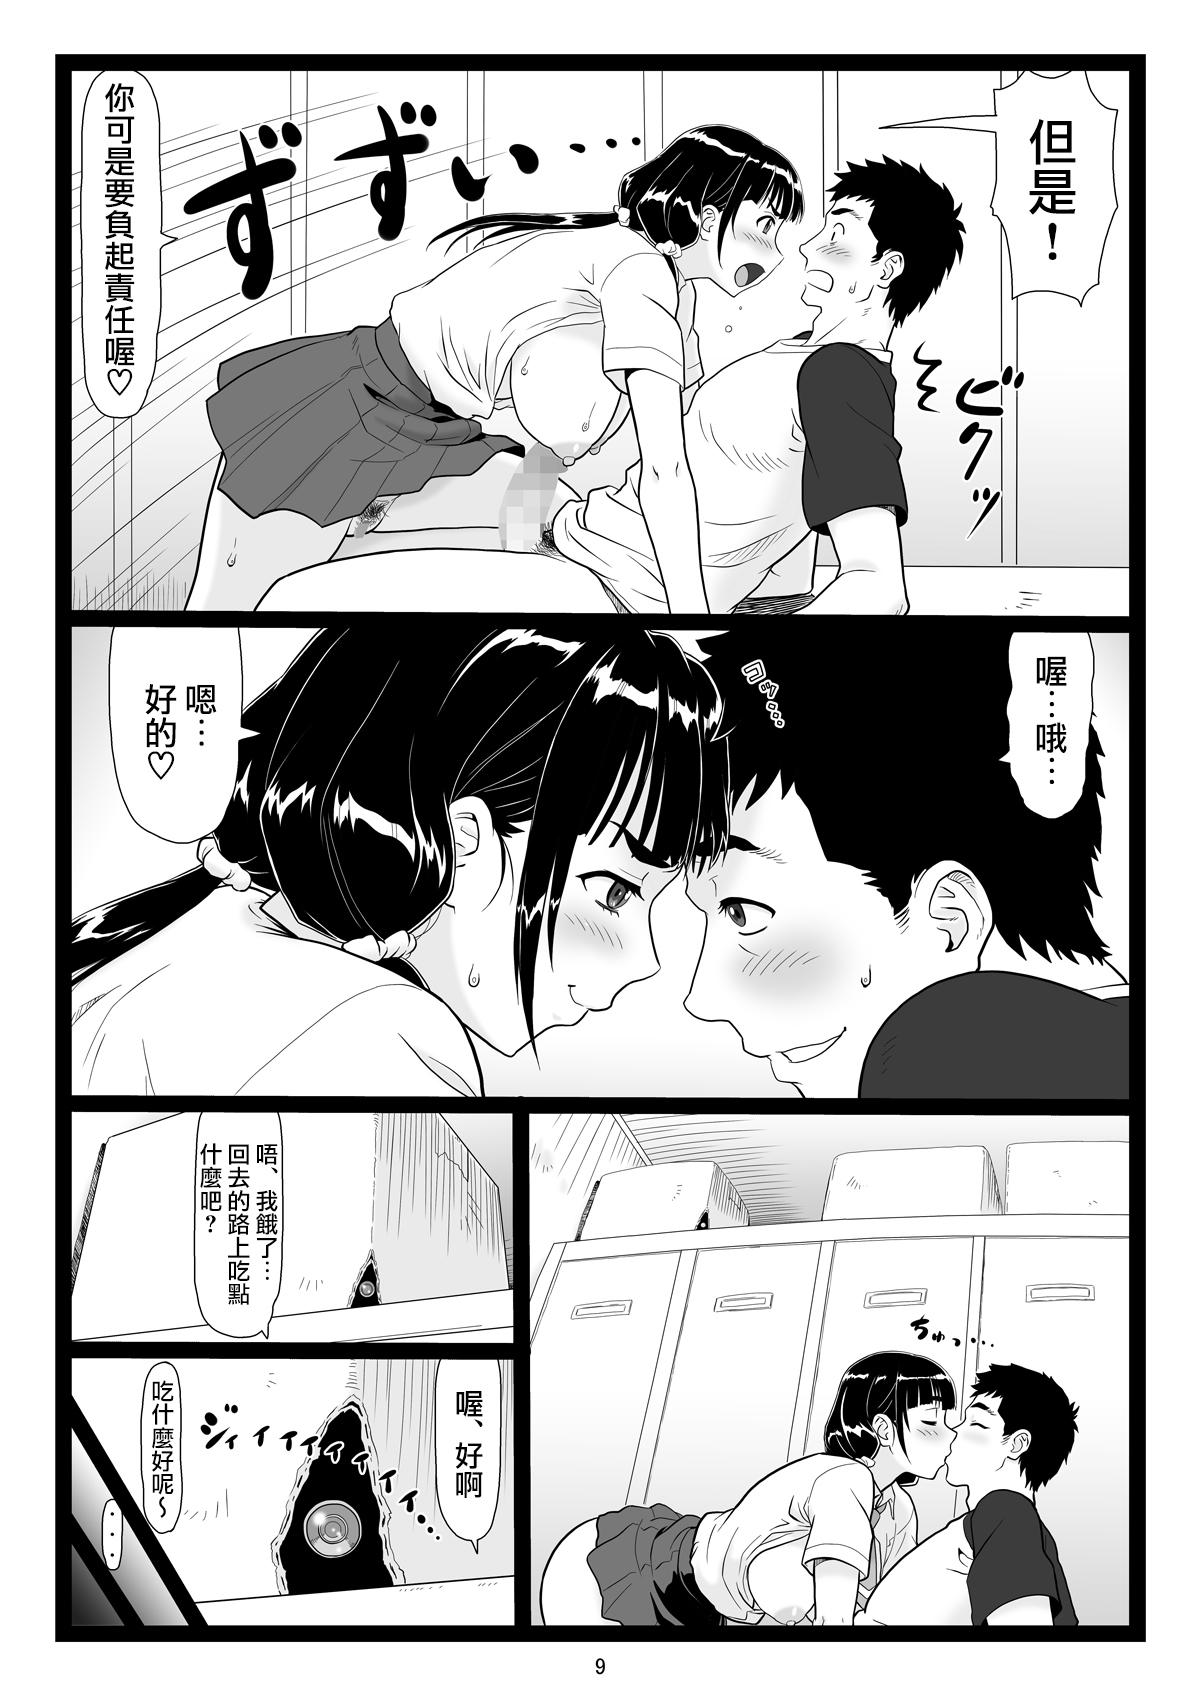 Grandma Tawawa de Akarui Yakyuubu Manager ga Inshitsu na Kyoushi no Wana ni... - Original 8teenxxx - Page 9